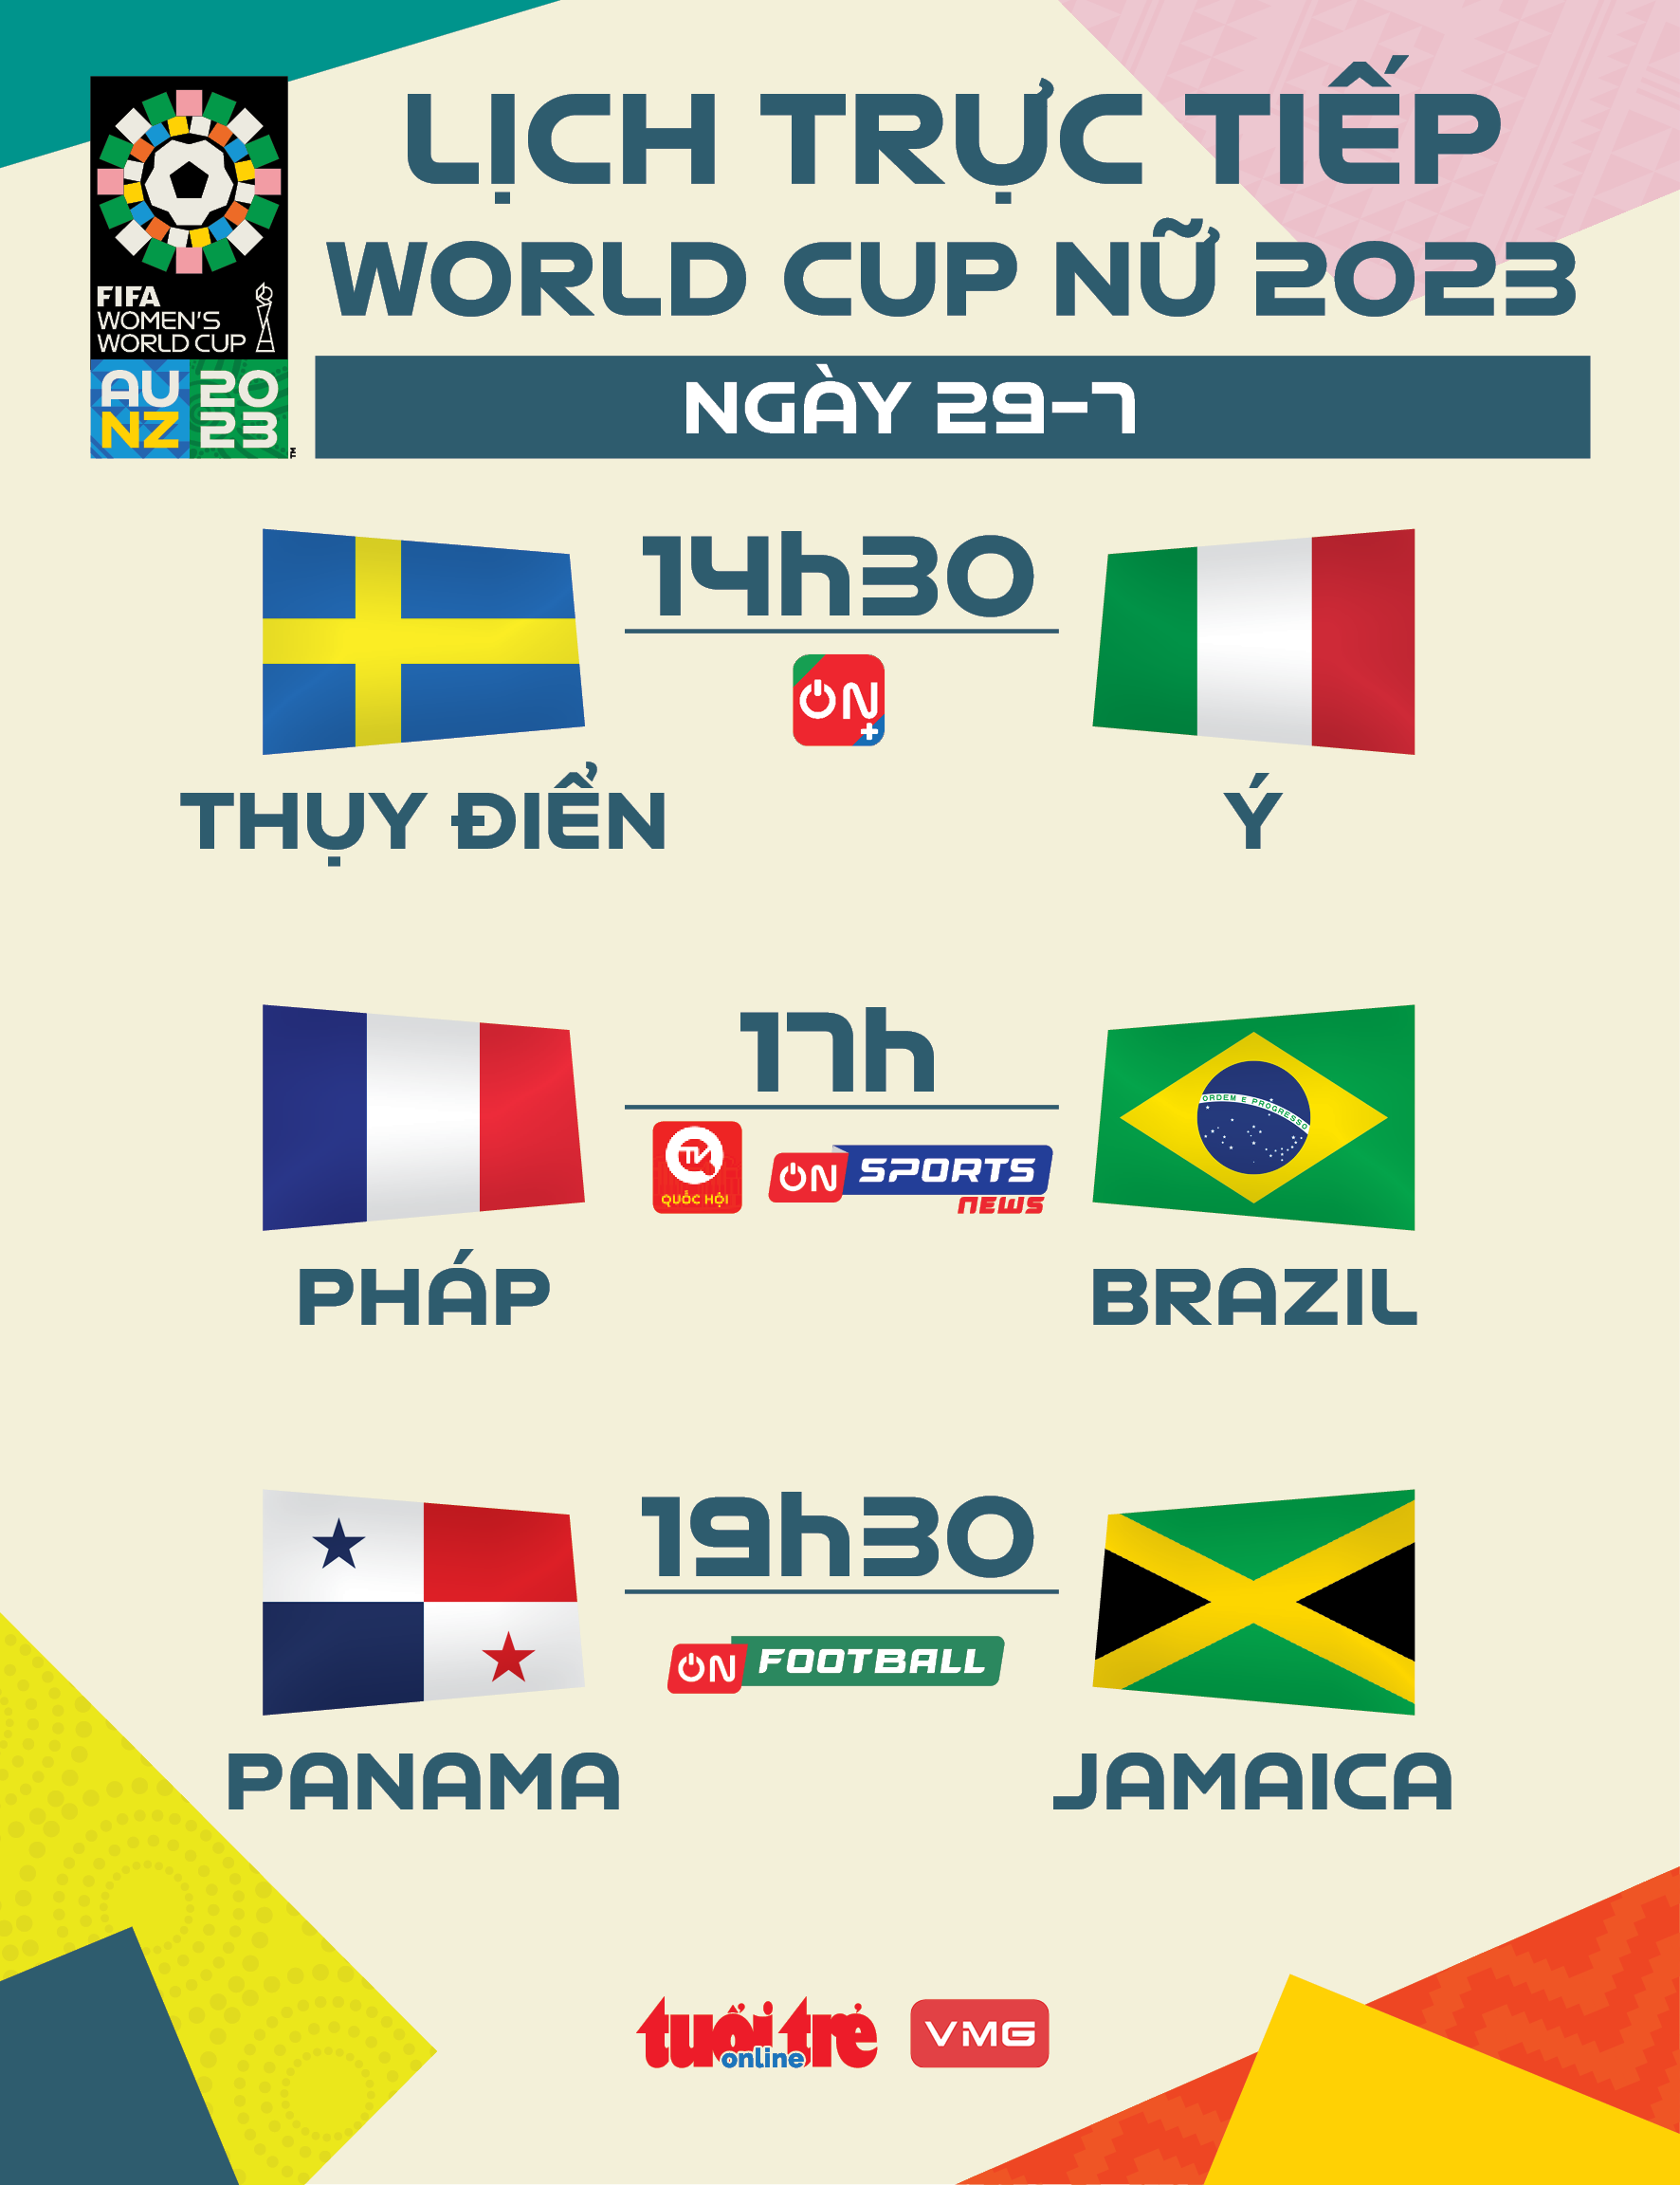 Lịch trực tiếp World Cup nữ 2023 ngày 29-7: Thụy Điển - Ý, Pháp - Brazil - Ảnh 1.